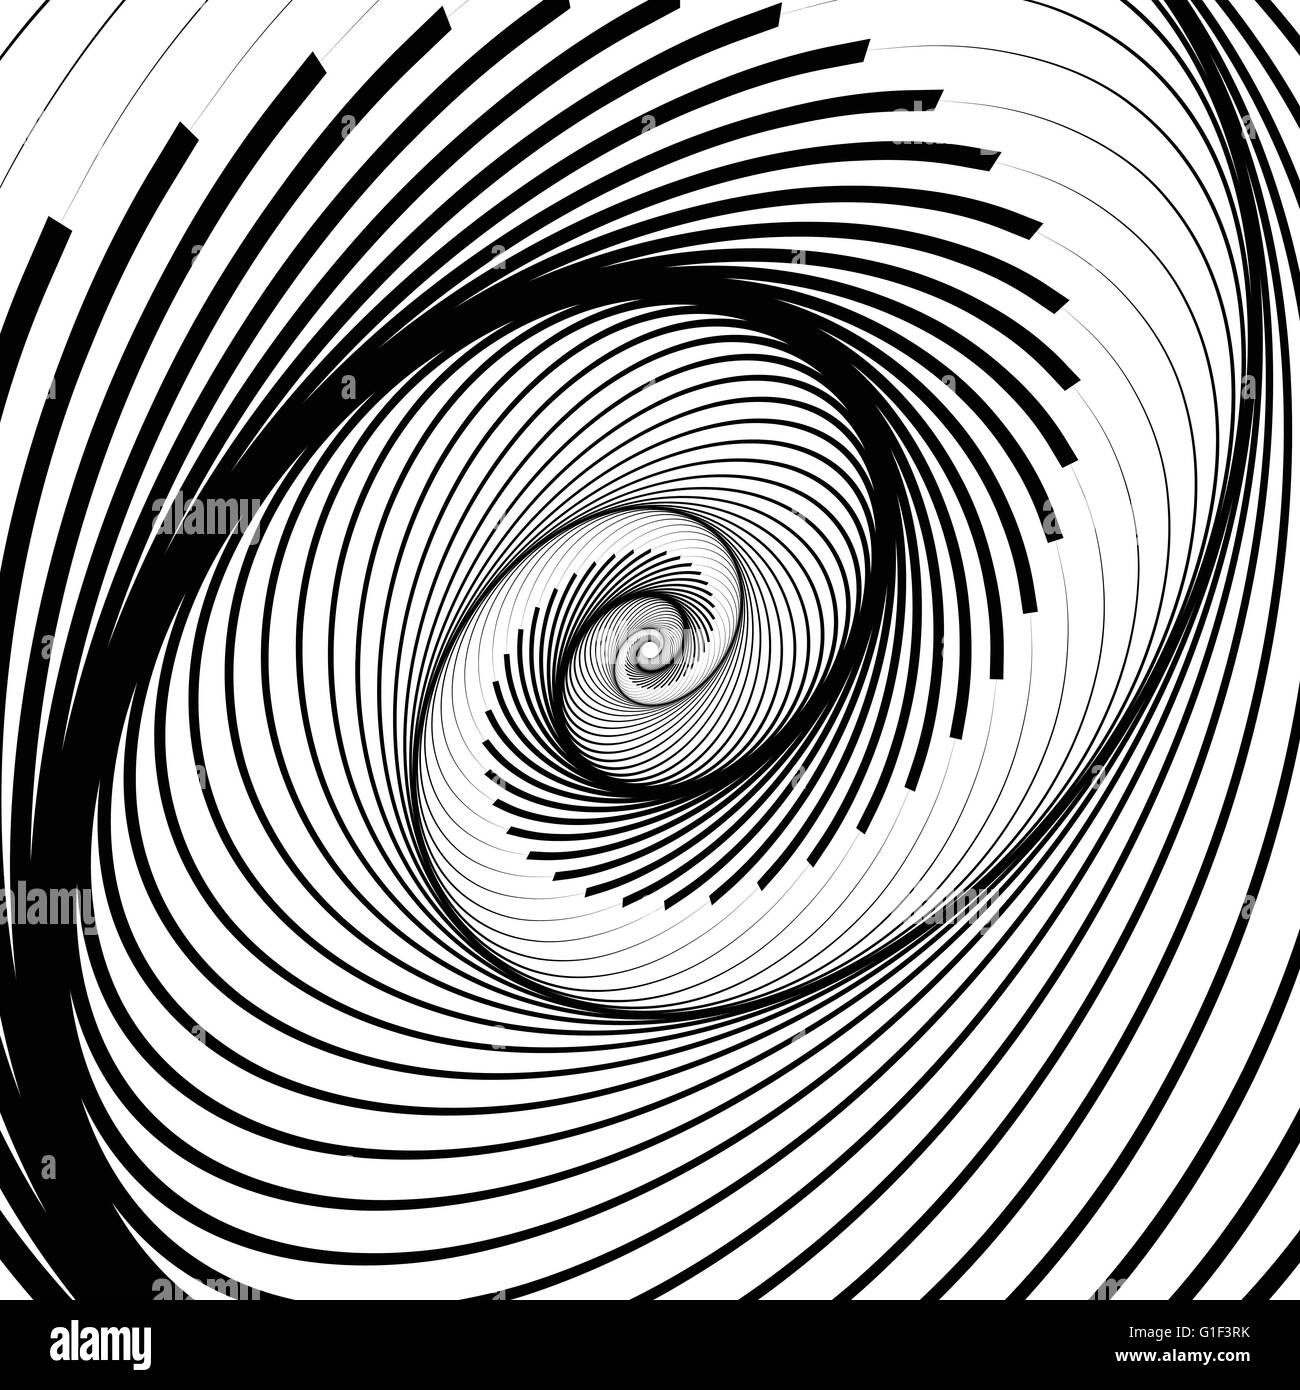 Spirale, Volute Hintergrund - rotierende strahlenden, konzentrische  Ellipse, ovale Formen. Schwarz / weiß Muster Stock-Vektorgrafik - Alamy